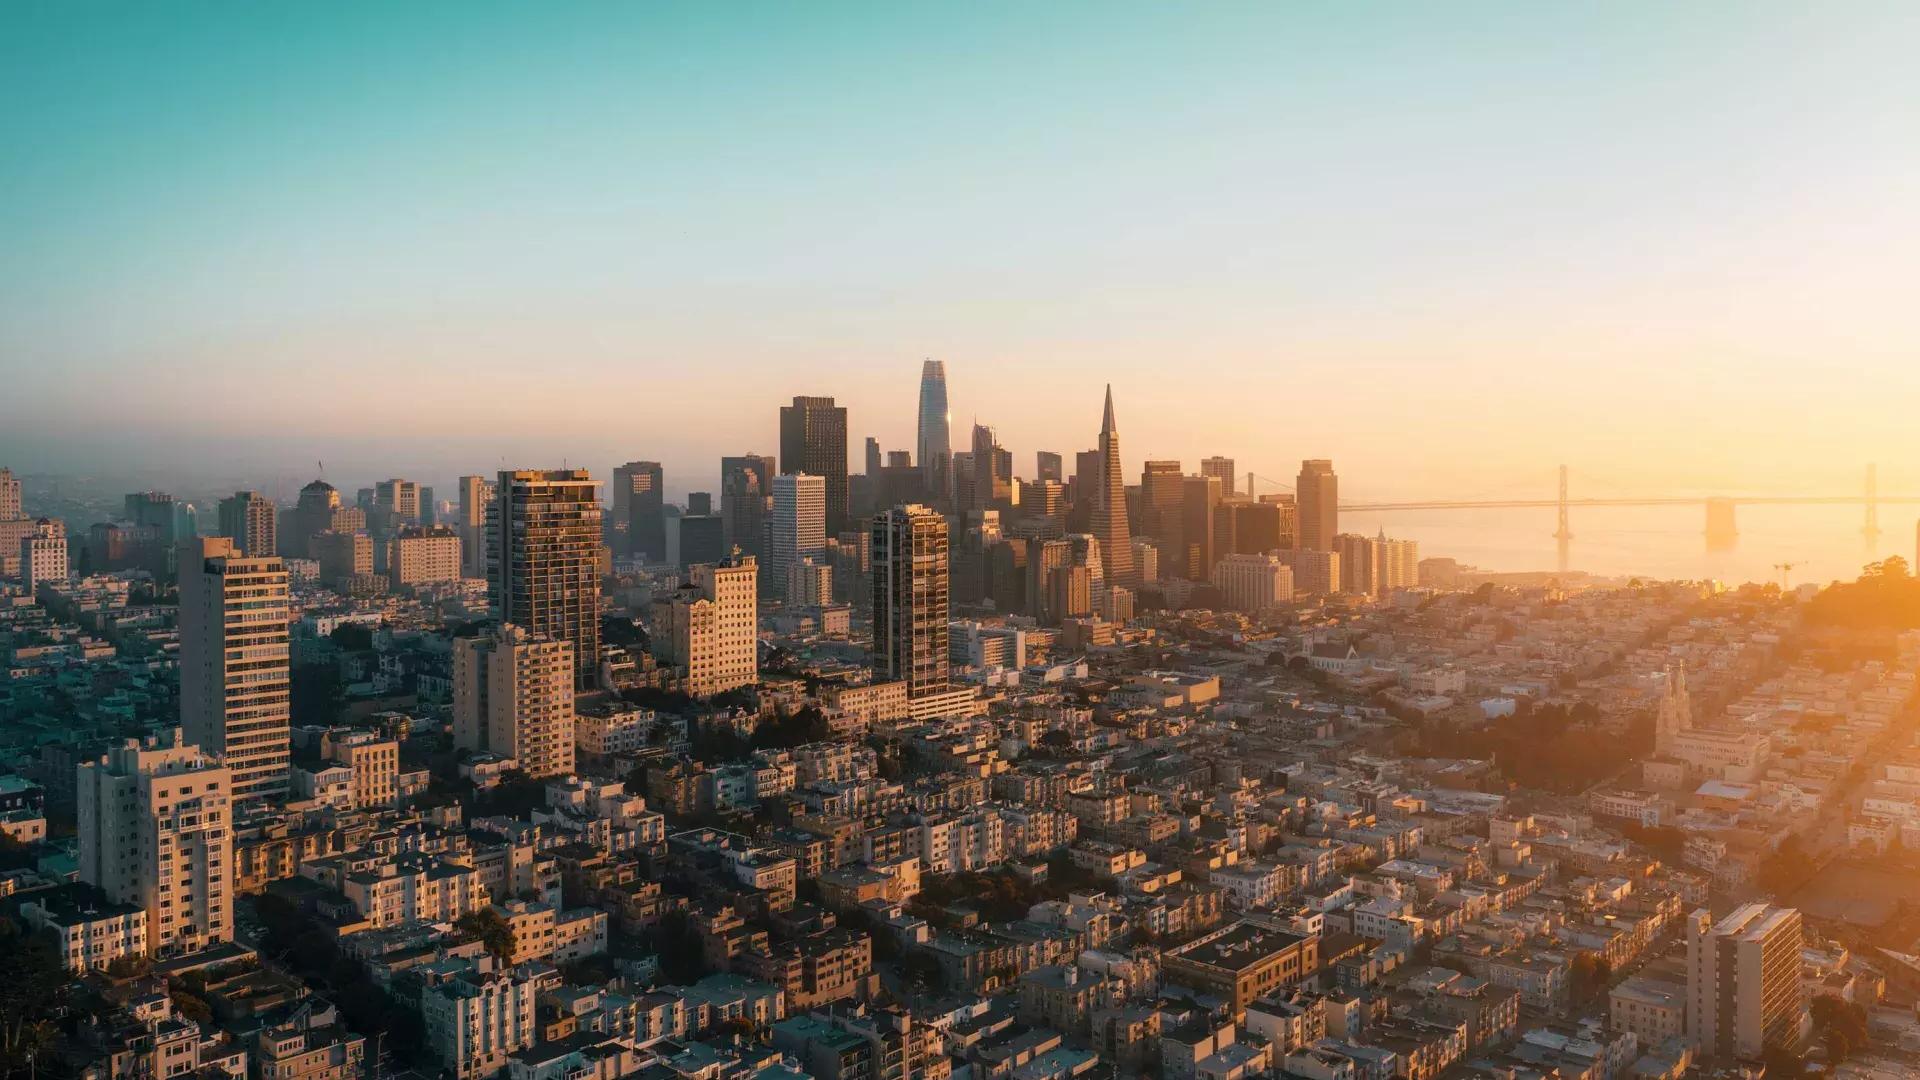 El horizonte de San Francisco se ve desde el aire bajo una luz dorada.